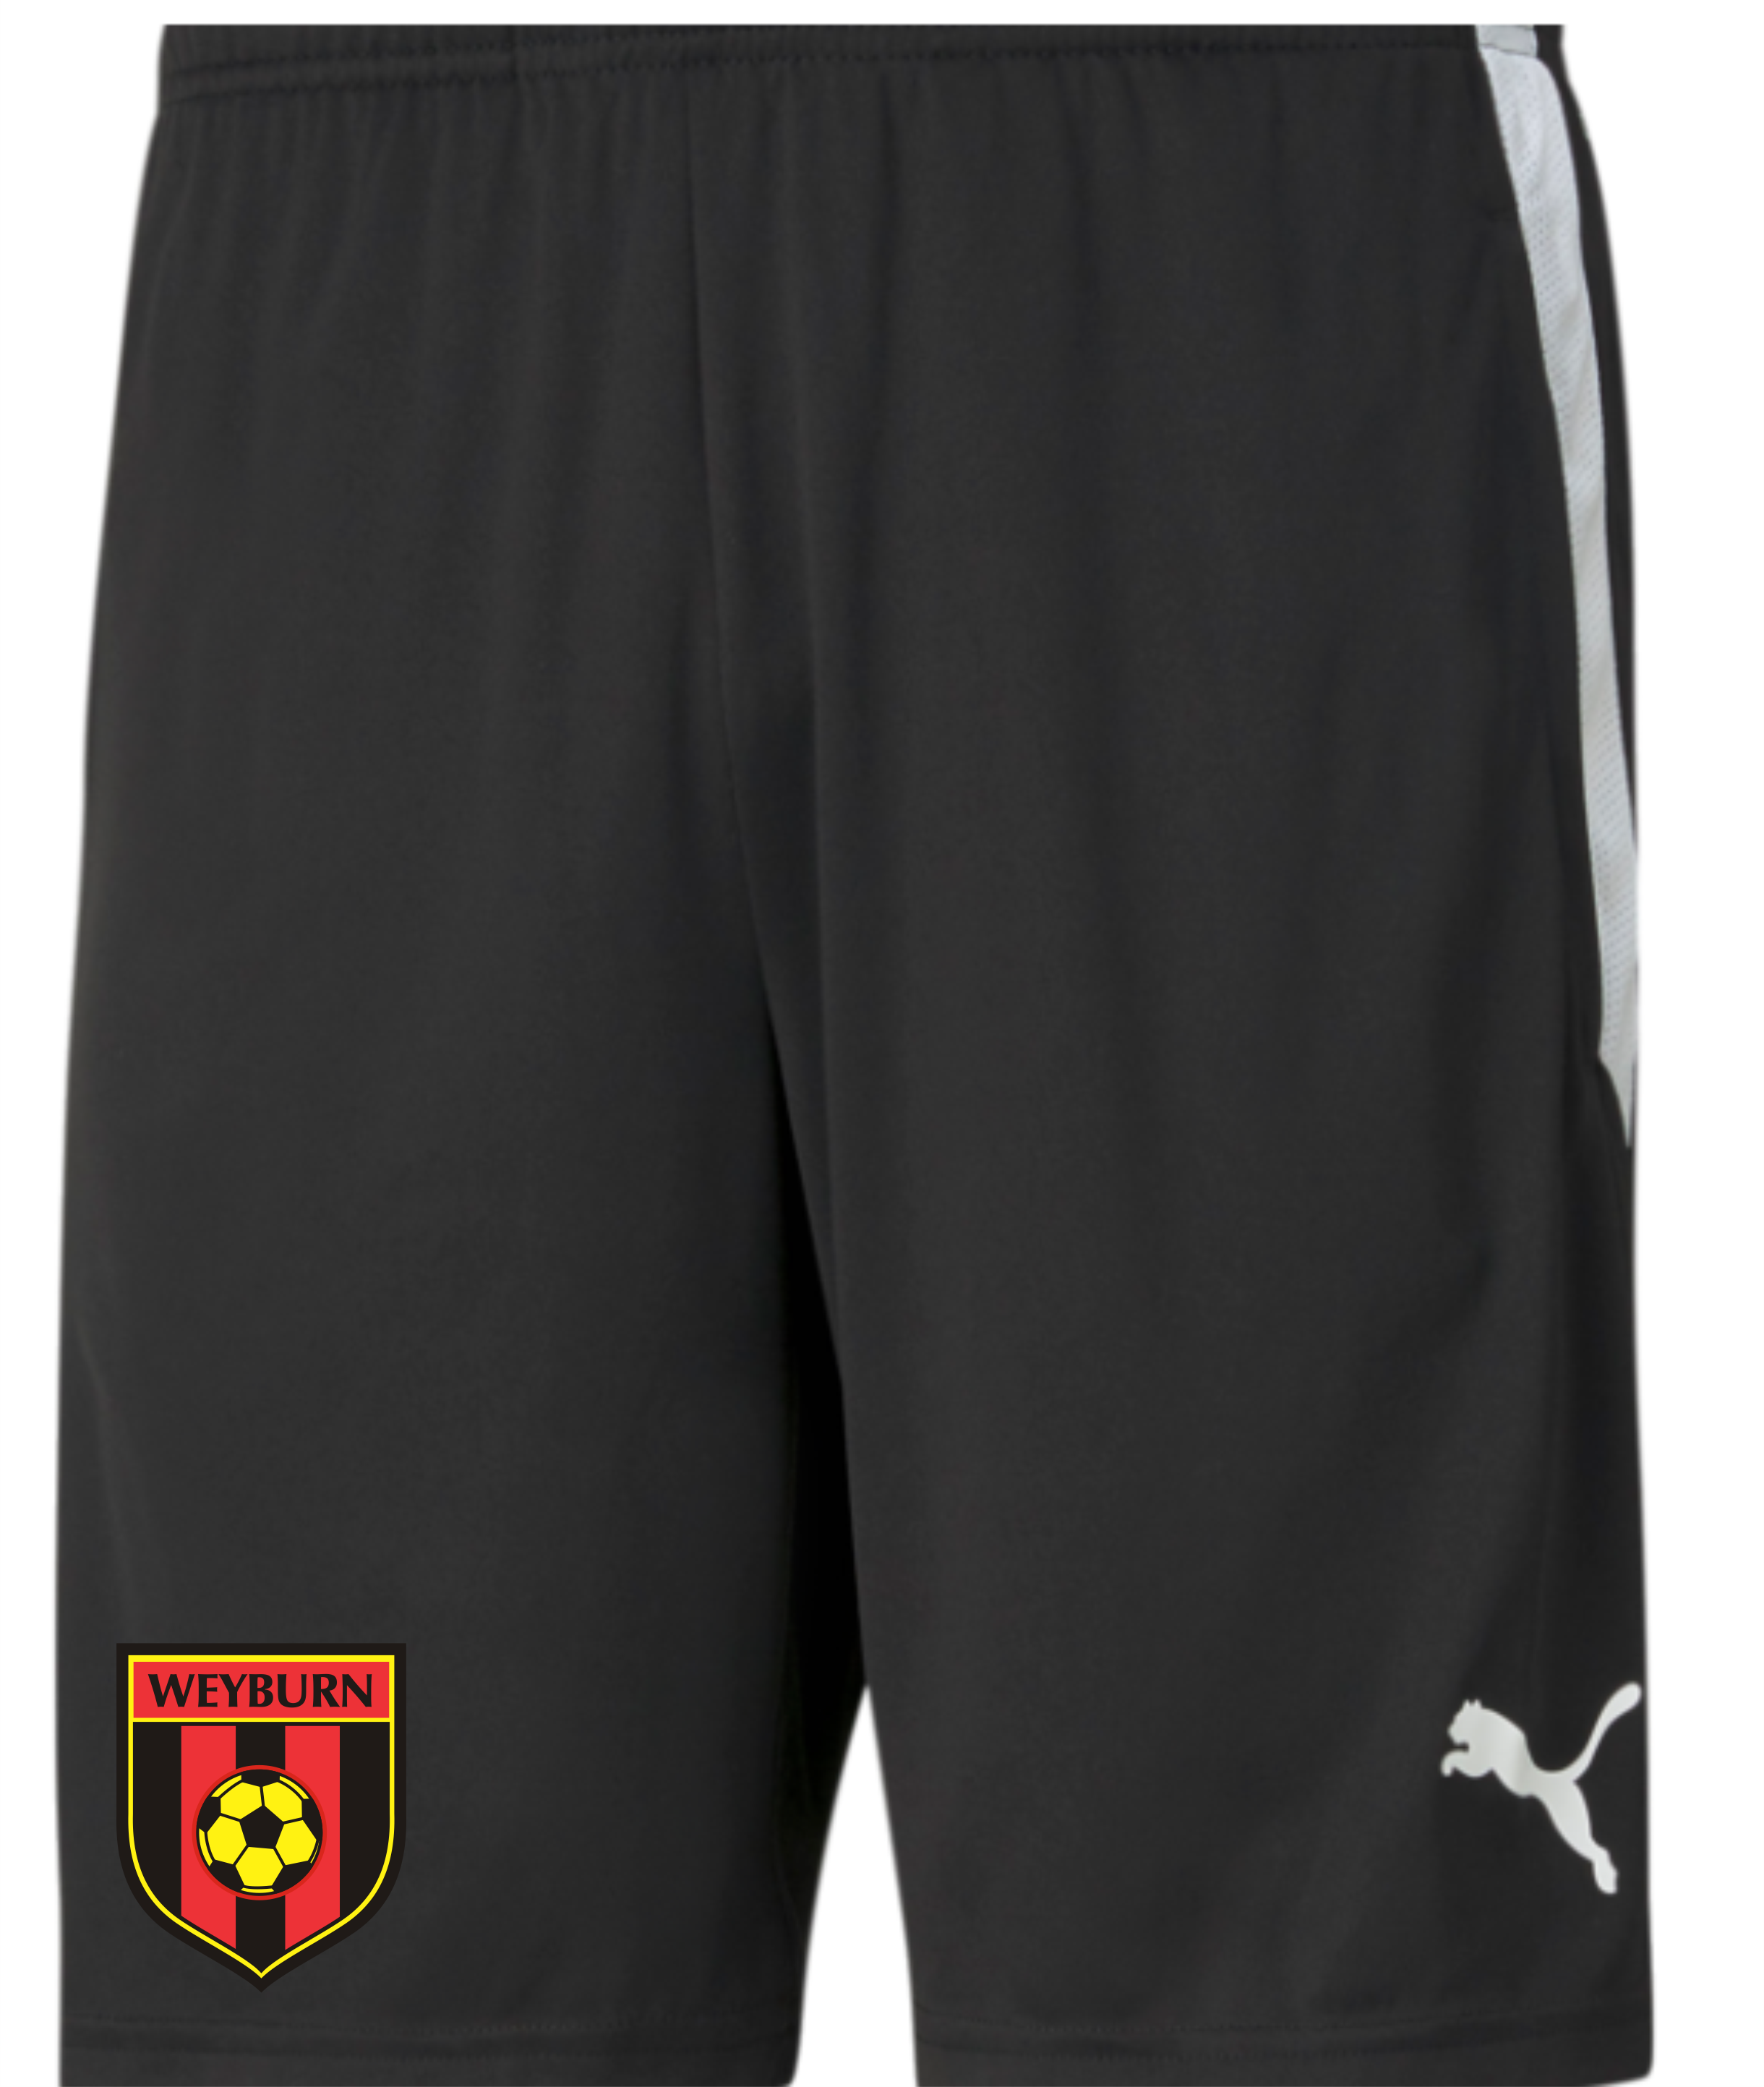 Puma Coach Shorts (Weyburn)